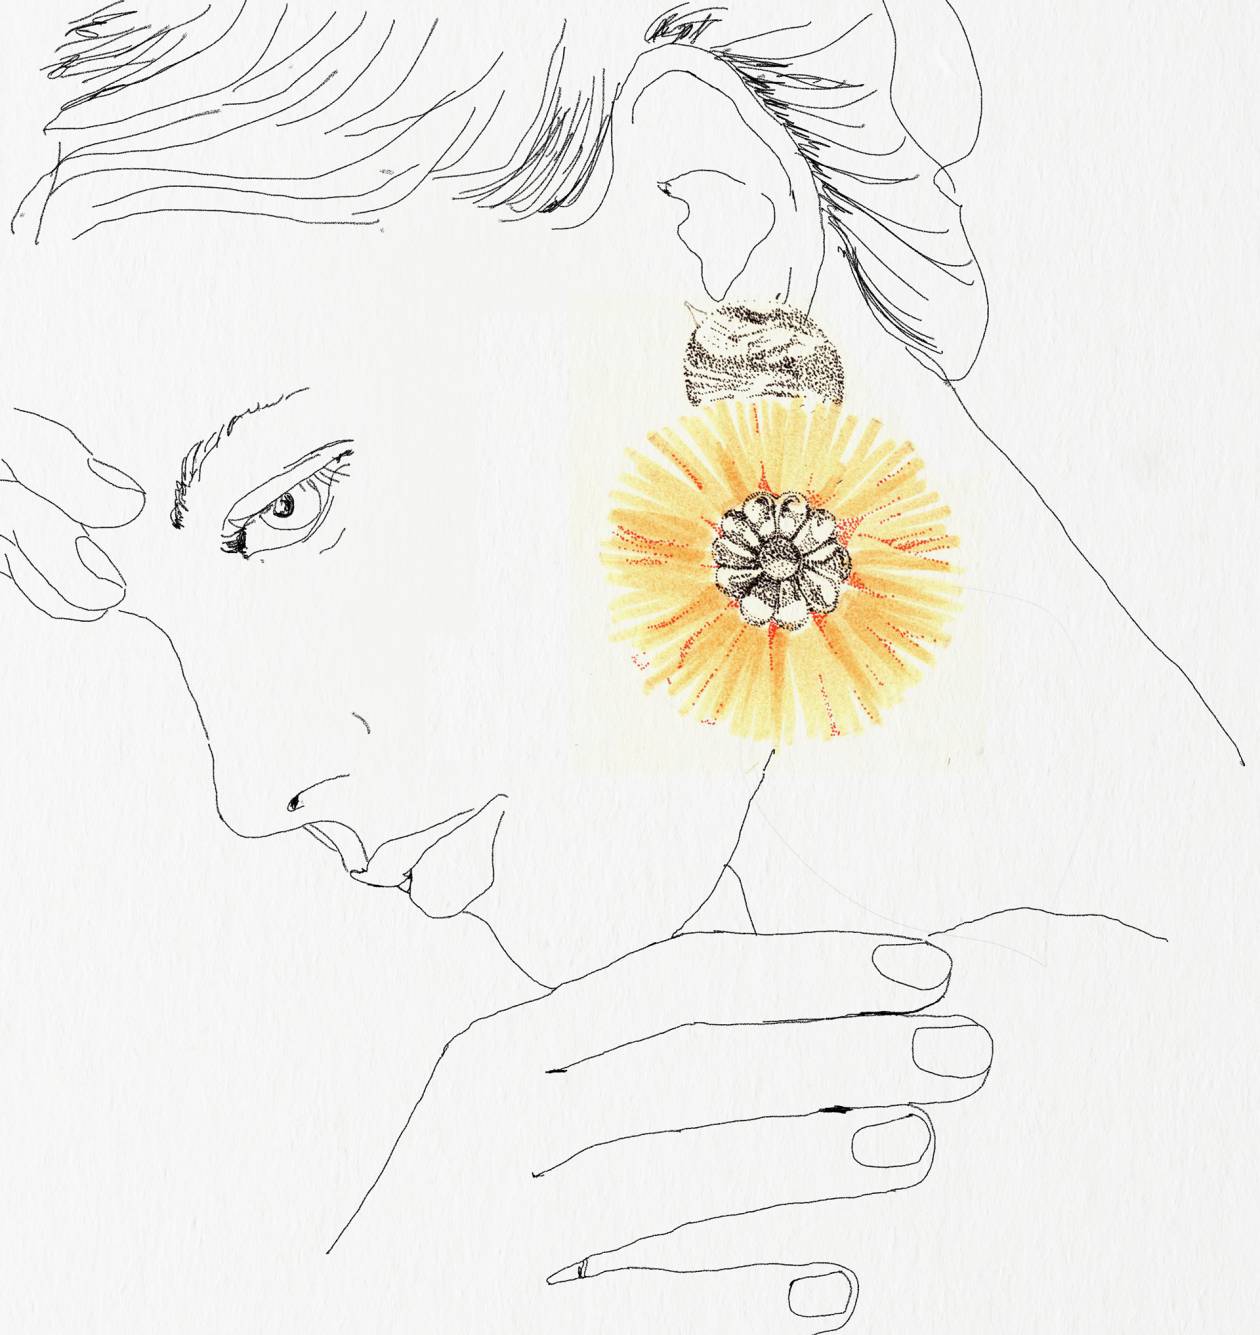 2. Paloma earrings